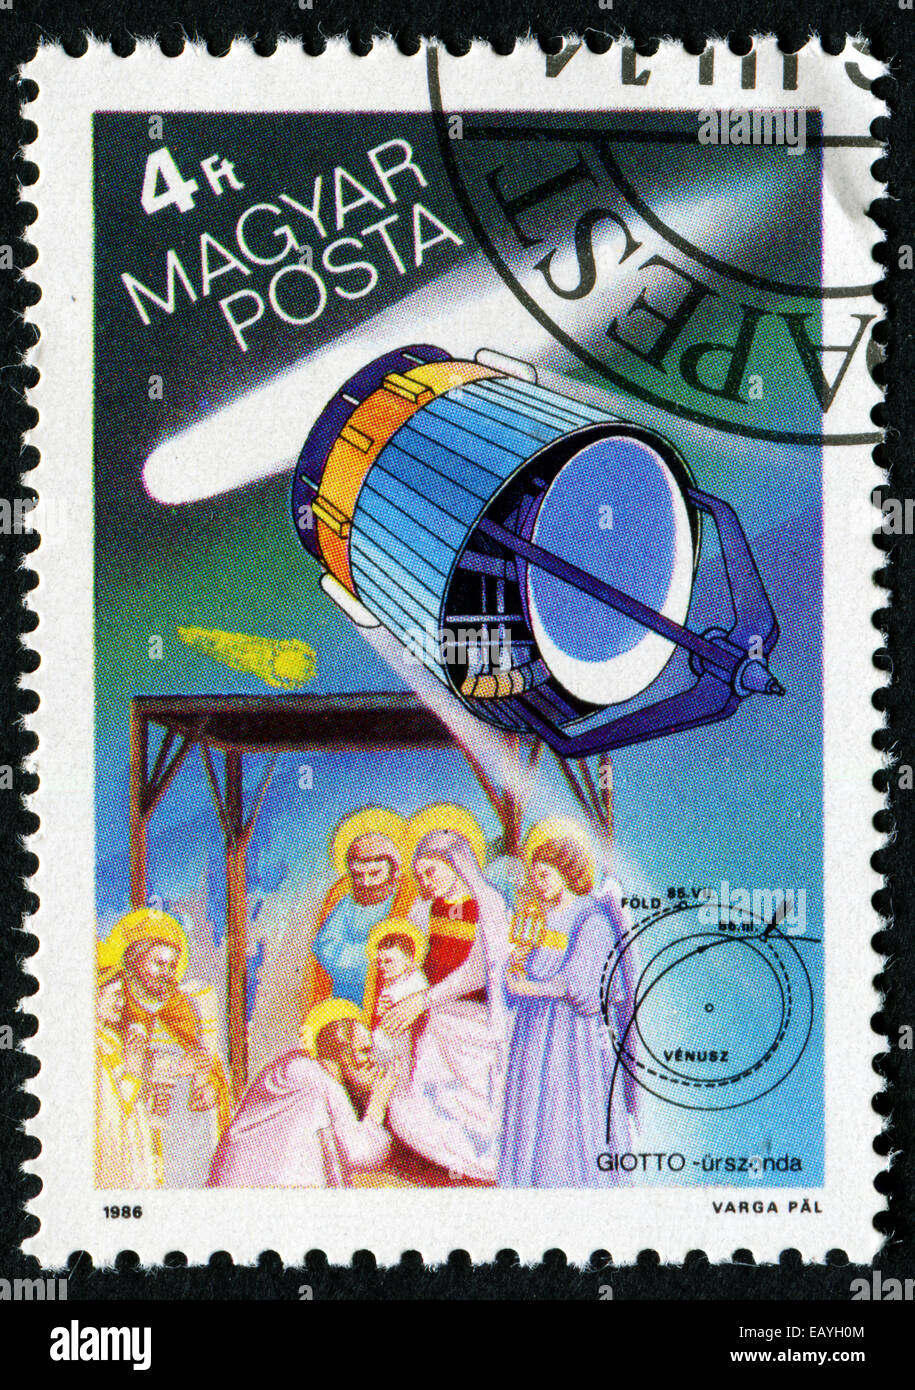 Ungarn - CIRCA 1986: Briefmarke gedruckt von Ungarn, zeigt Halleyschen Kometen, European Space Agency Giotto, die drei Könige, Wandteppich von Stockfoto